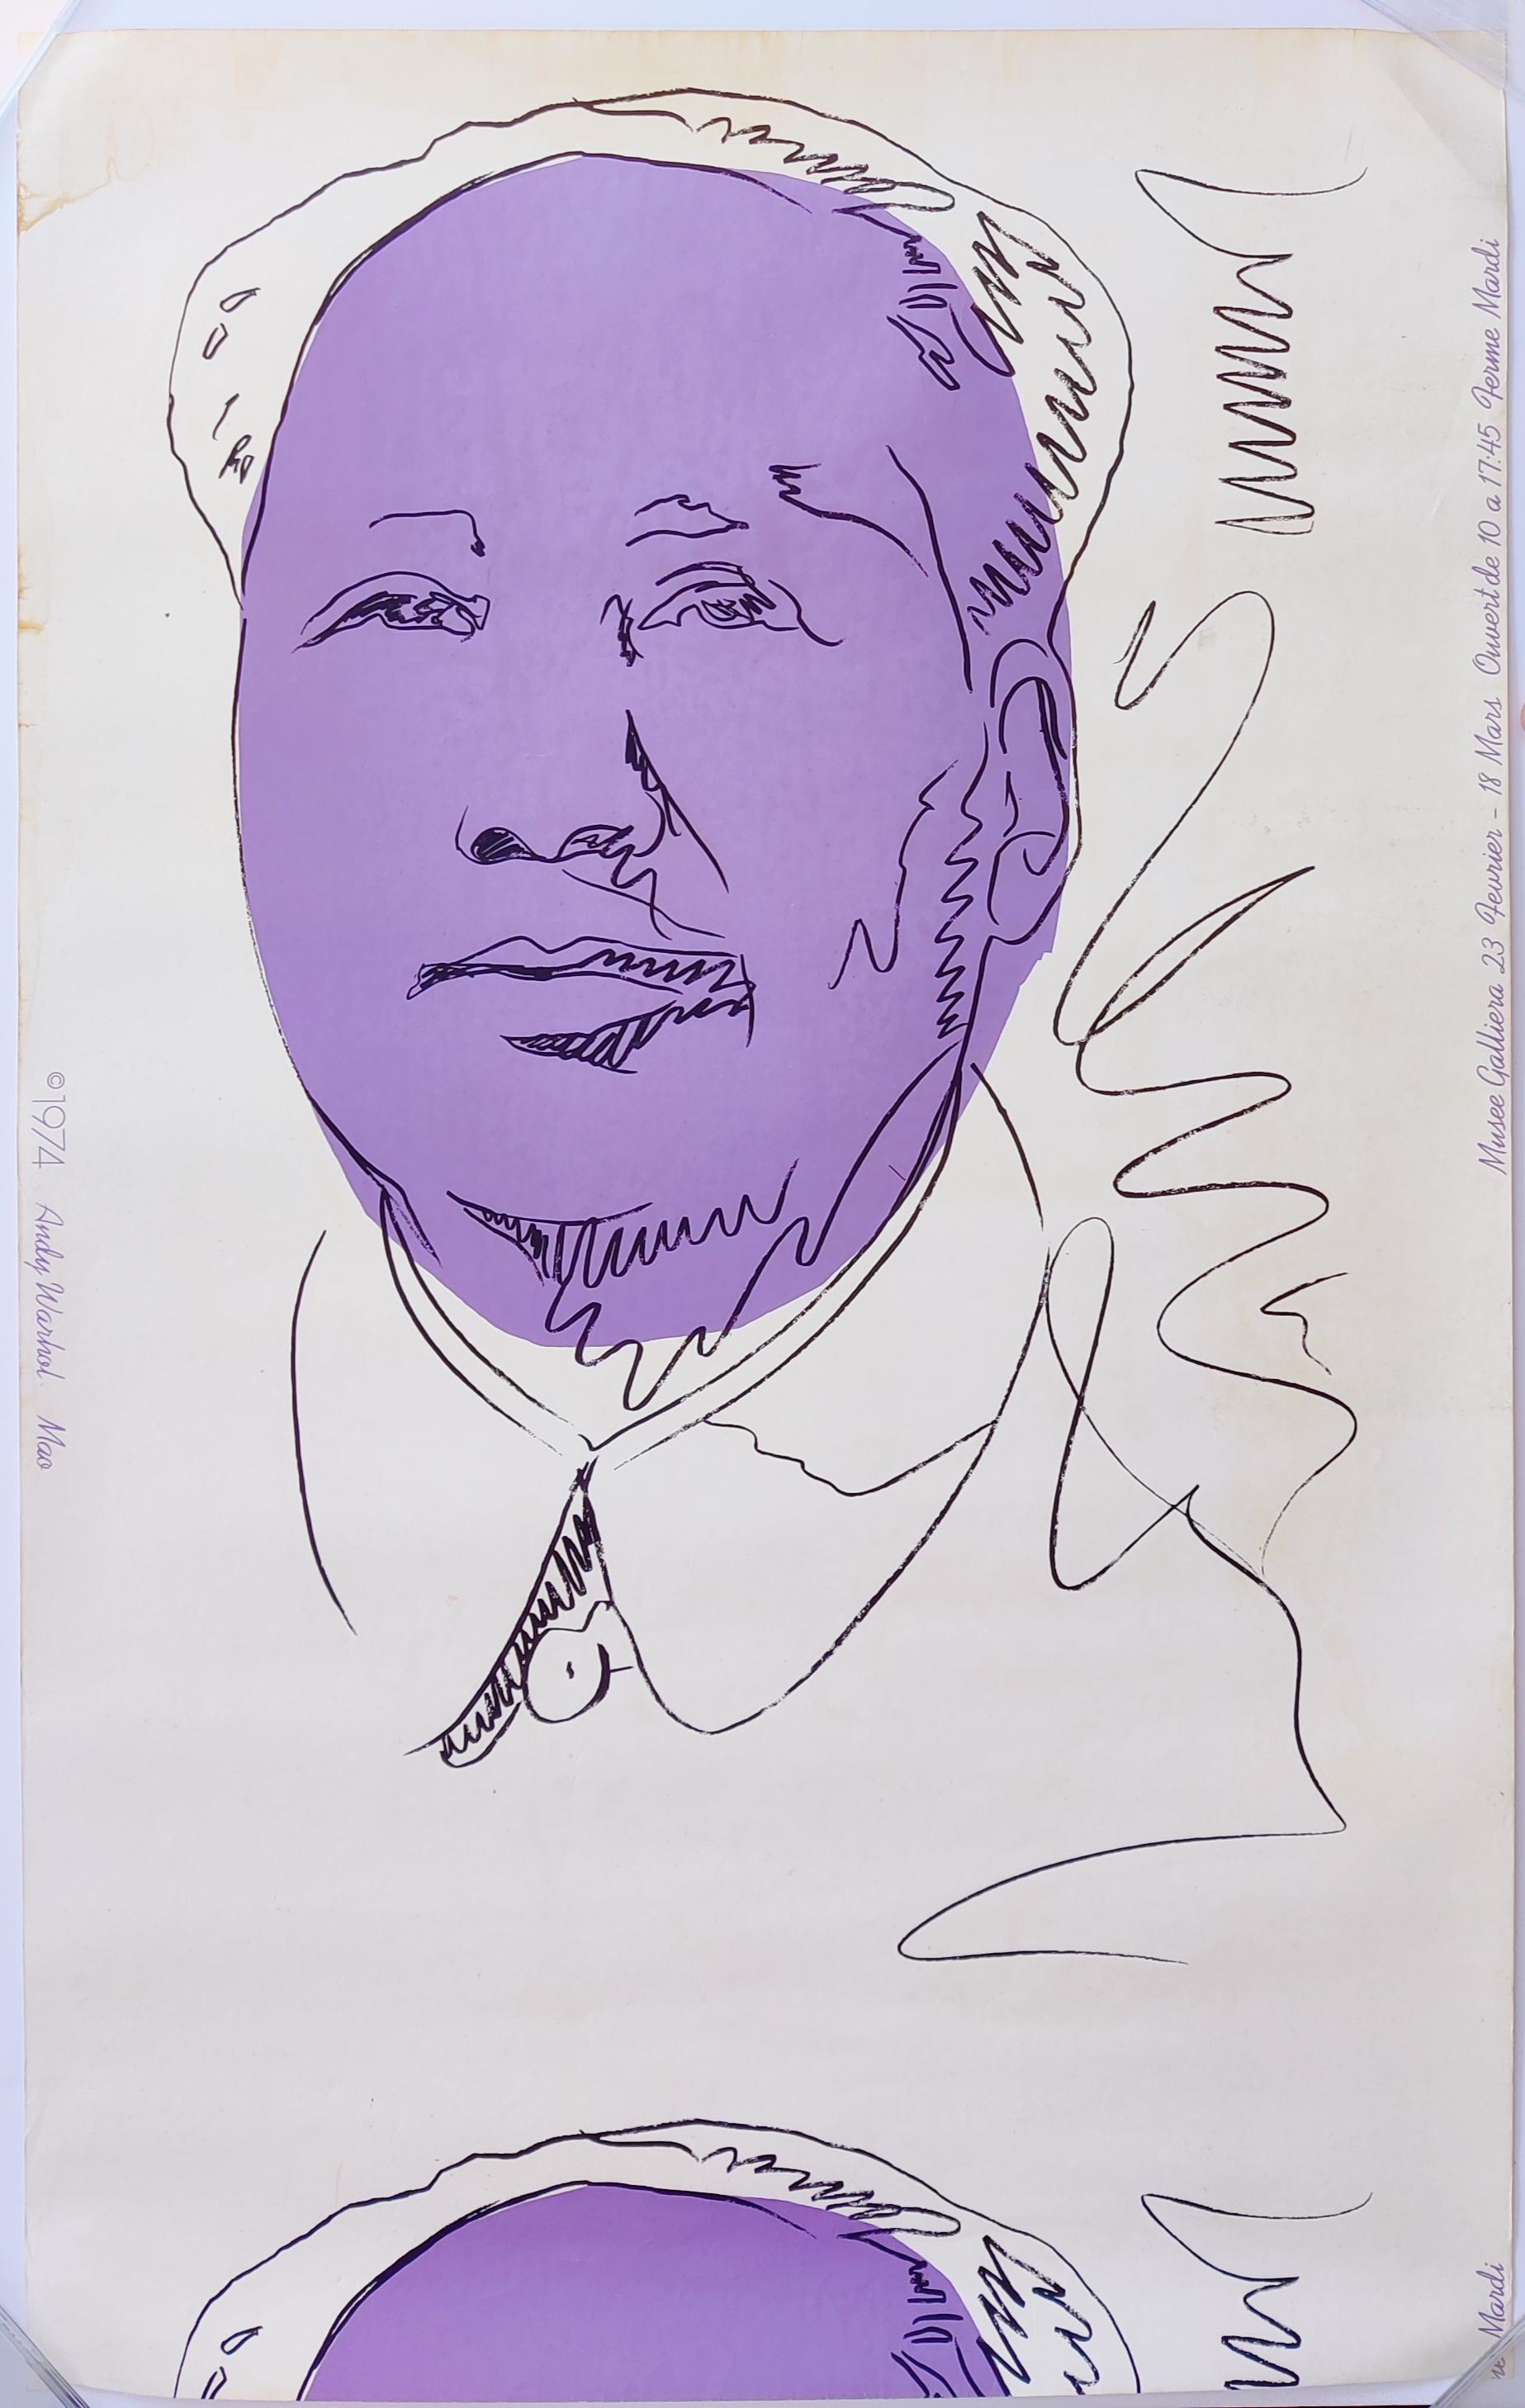 Andy Warhol
Mao (Hintergrundbild) 
1974
Siebdruck in Farben, auf Tapete
Blattgröße. 118 x 72 cm 
Ein Ausschnitt aus der Originalinstallation der Ausstellung Andy Warhol: Mao im Musée Galliera, Paris, 23. Februar bis 18. März 1974
Aktenzeichen F. &